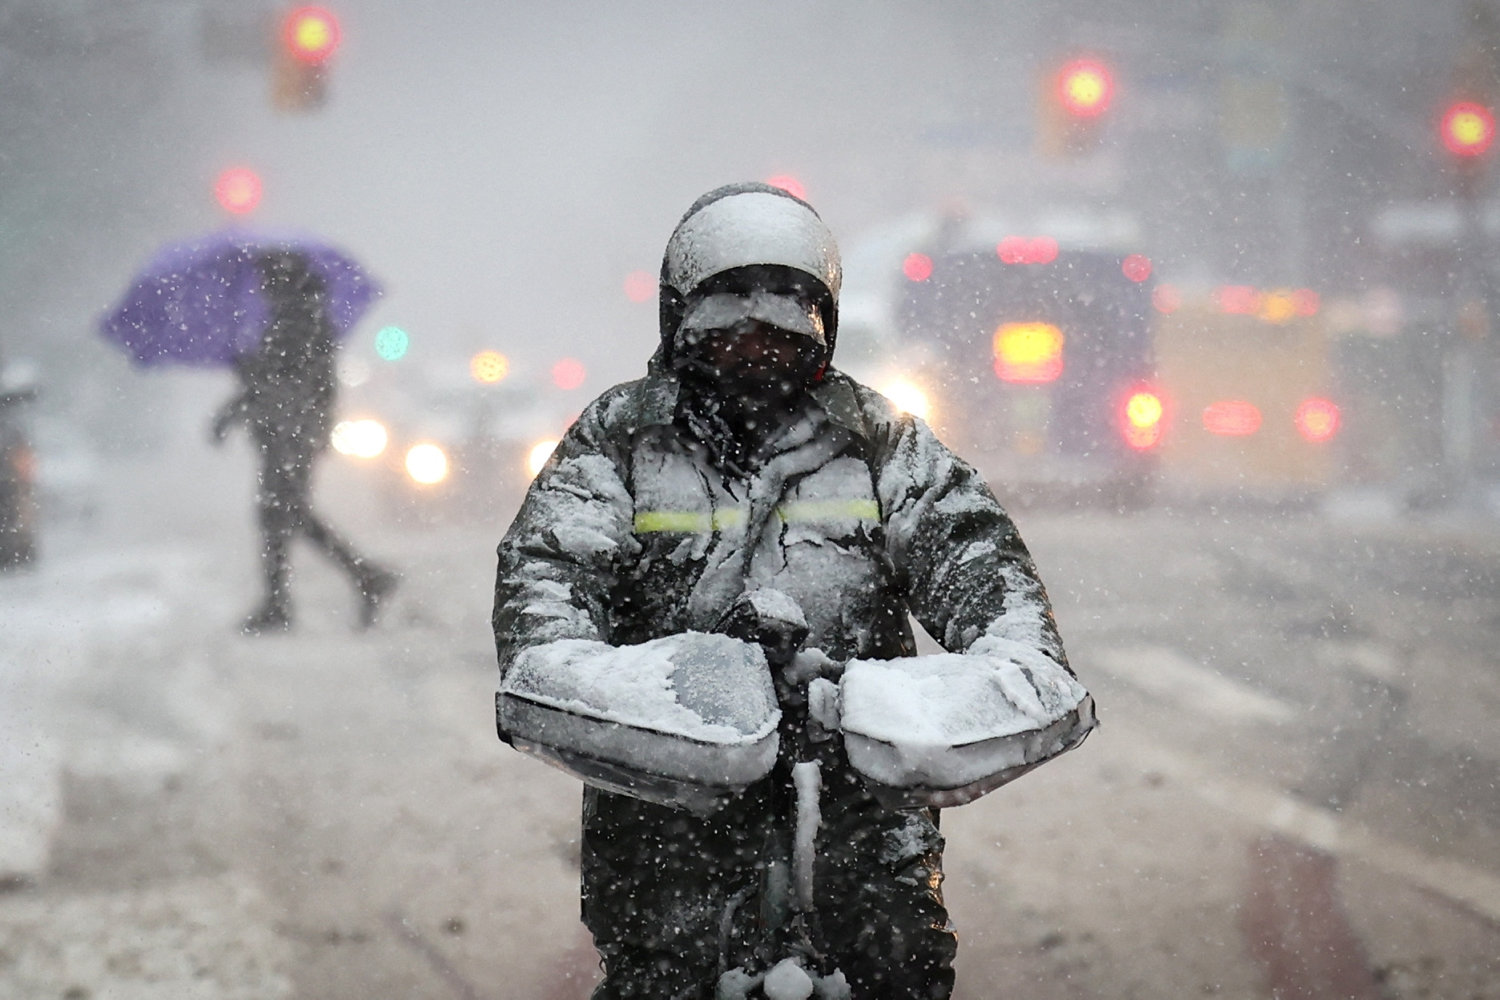 voldsomt snevejr skaber stort kaos i new yorks trafik